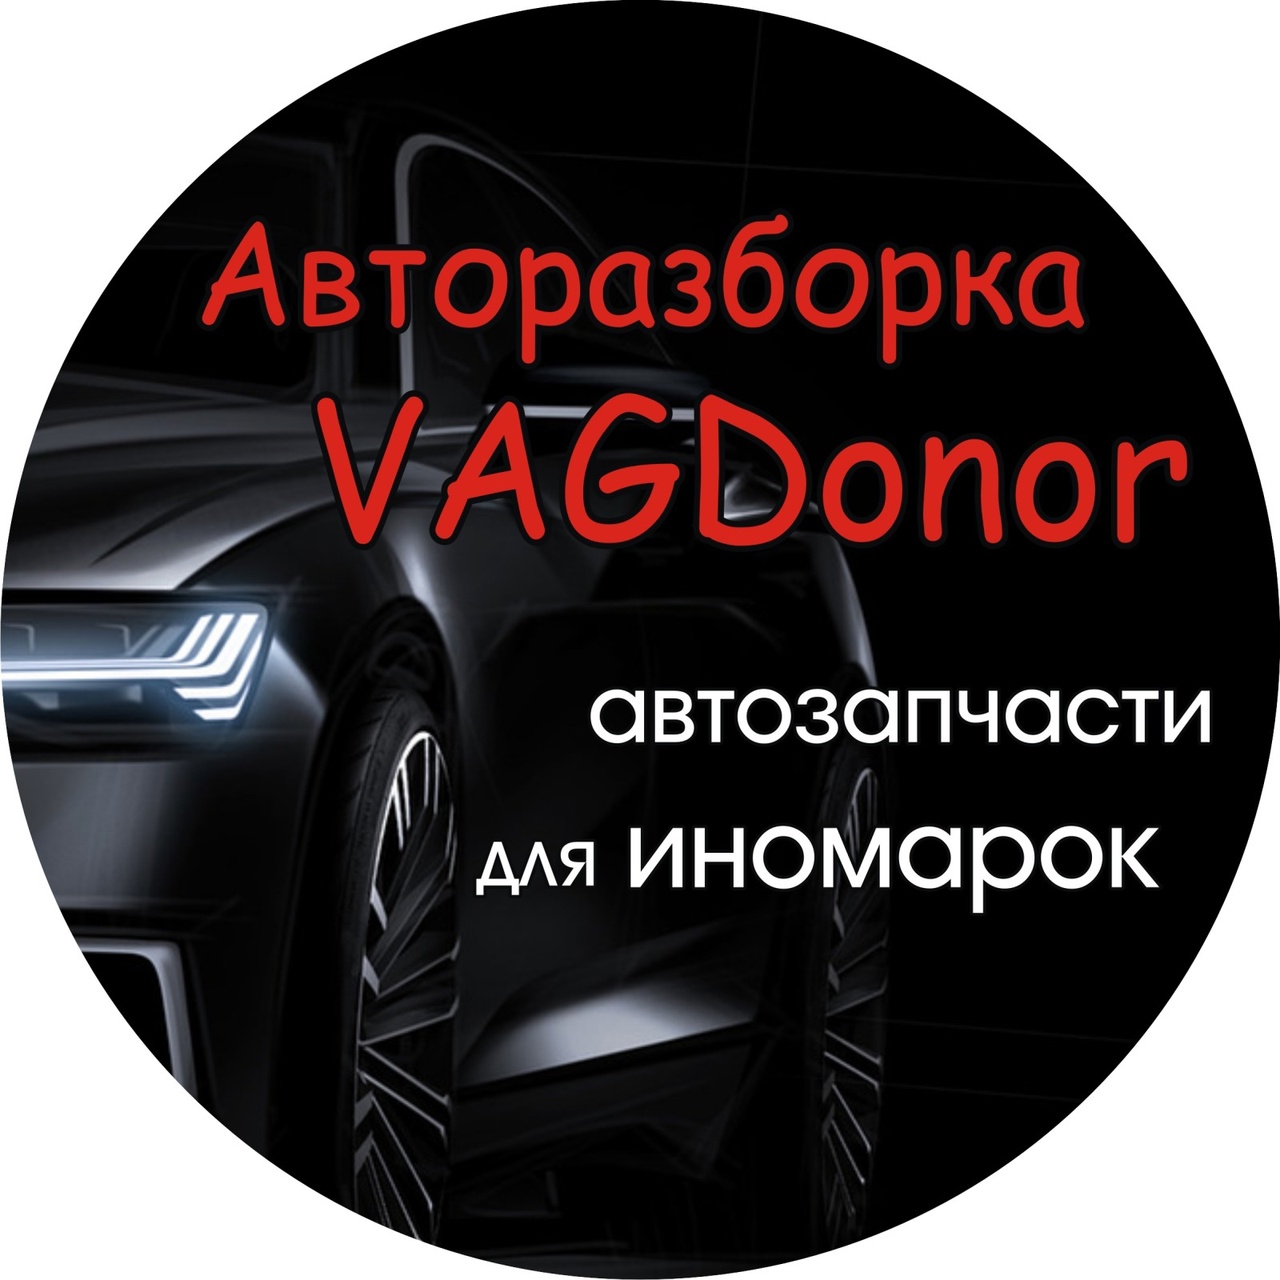 Интернет-магазин б.у автозапчастей VAGDonor